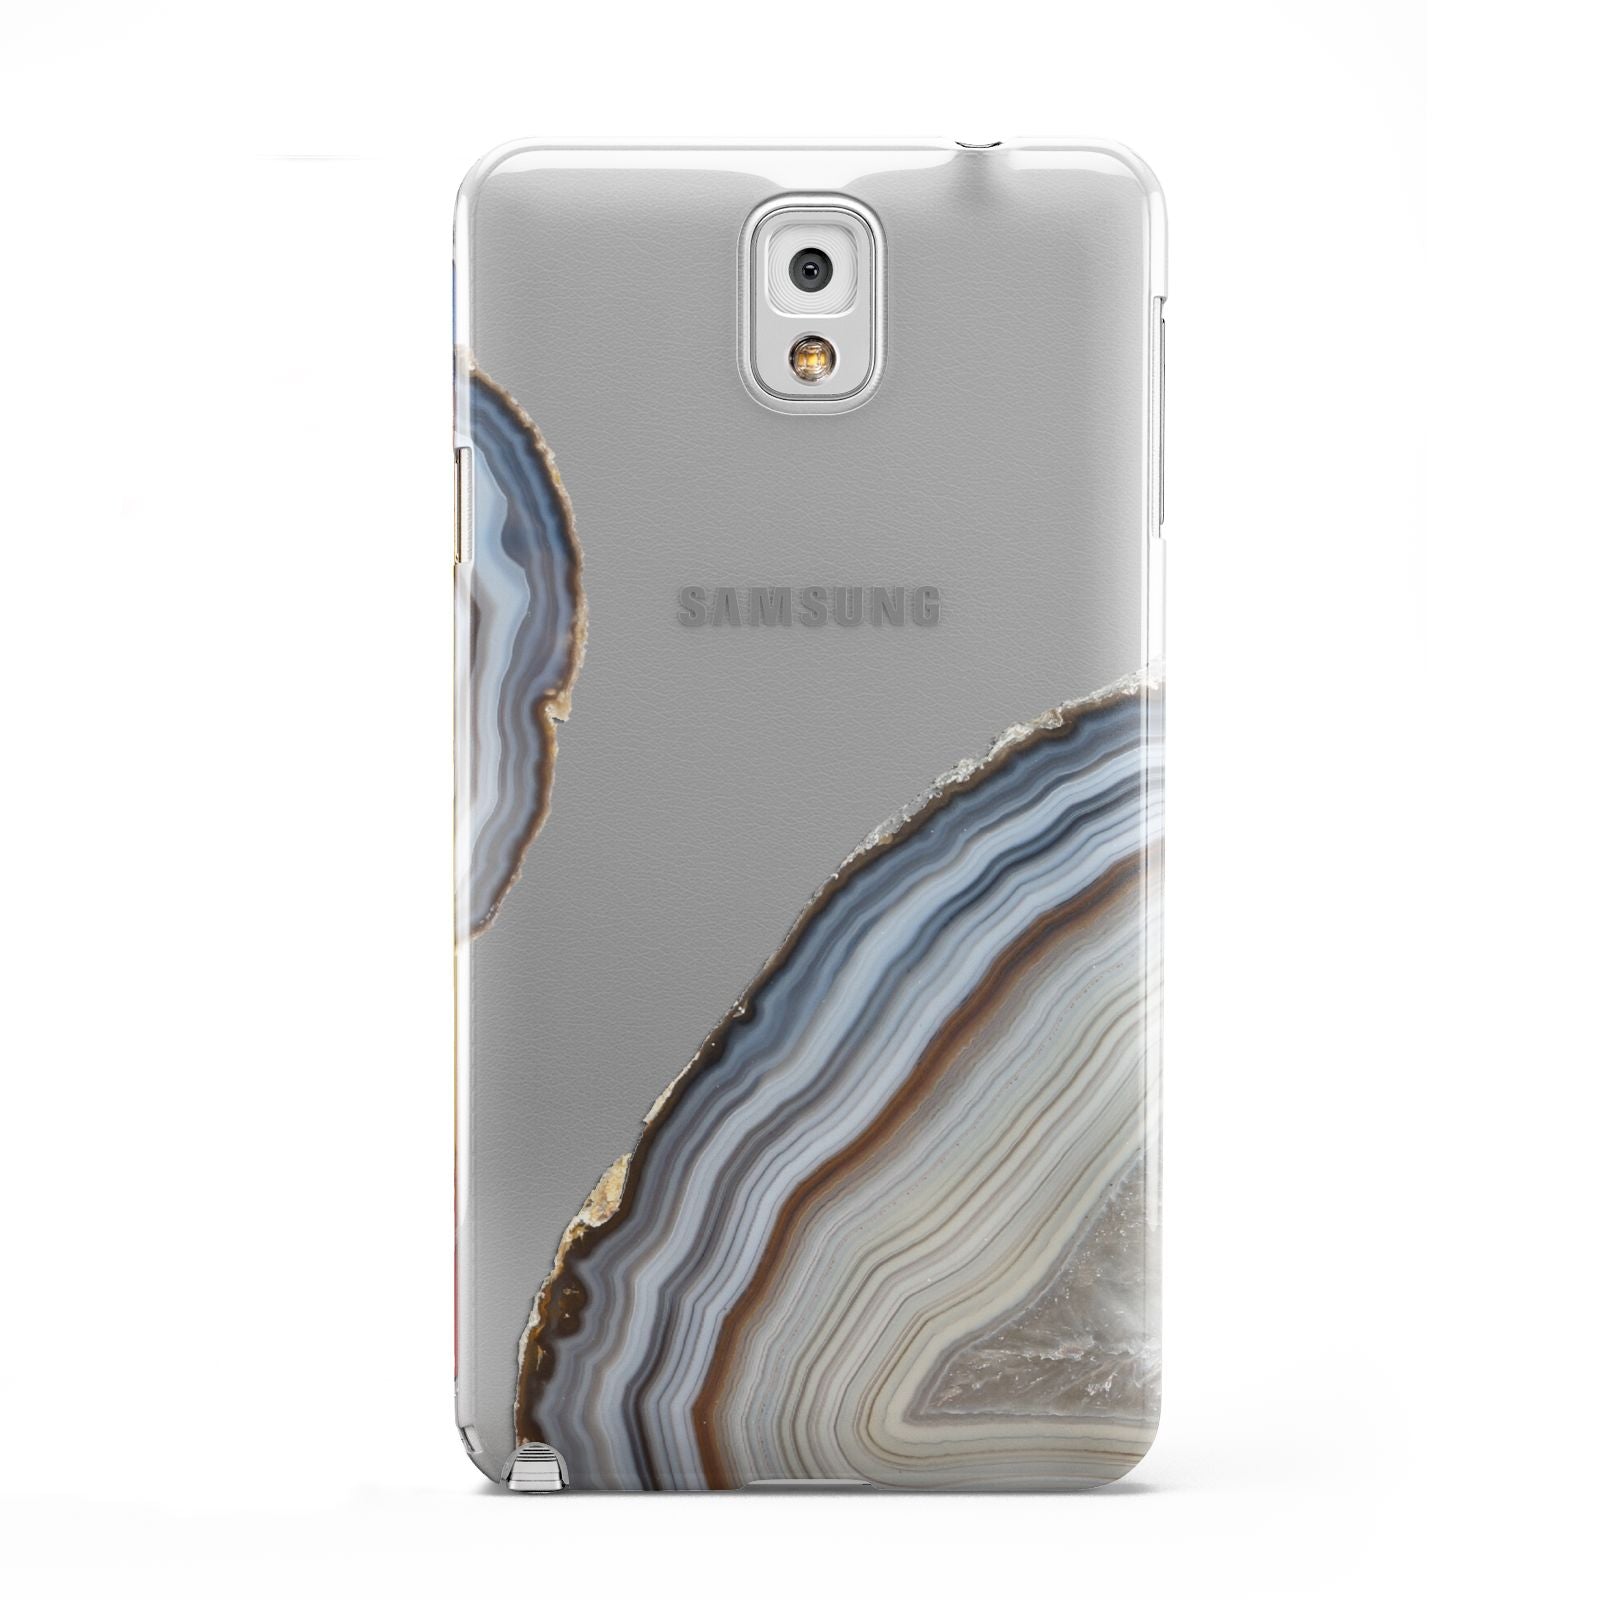 Agate Blue Grey Samsung Galaxy Note 3 Case